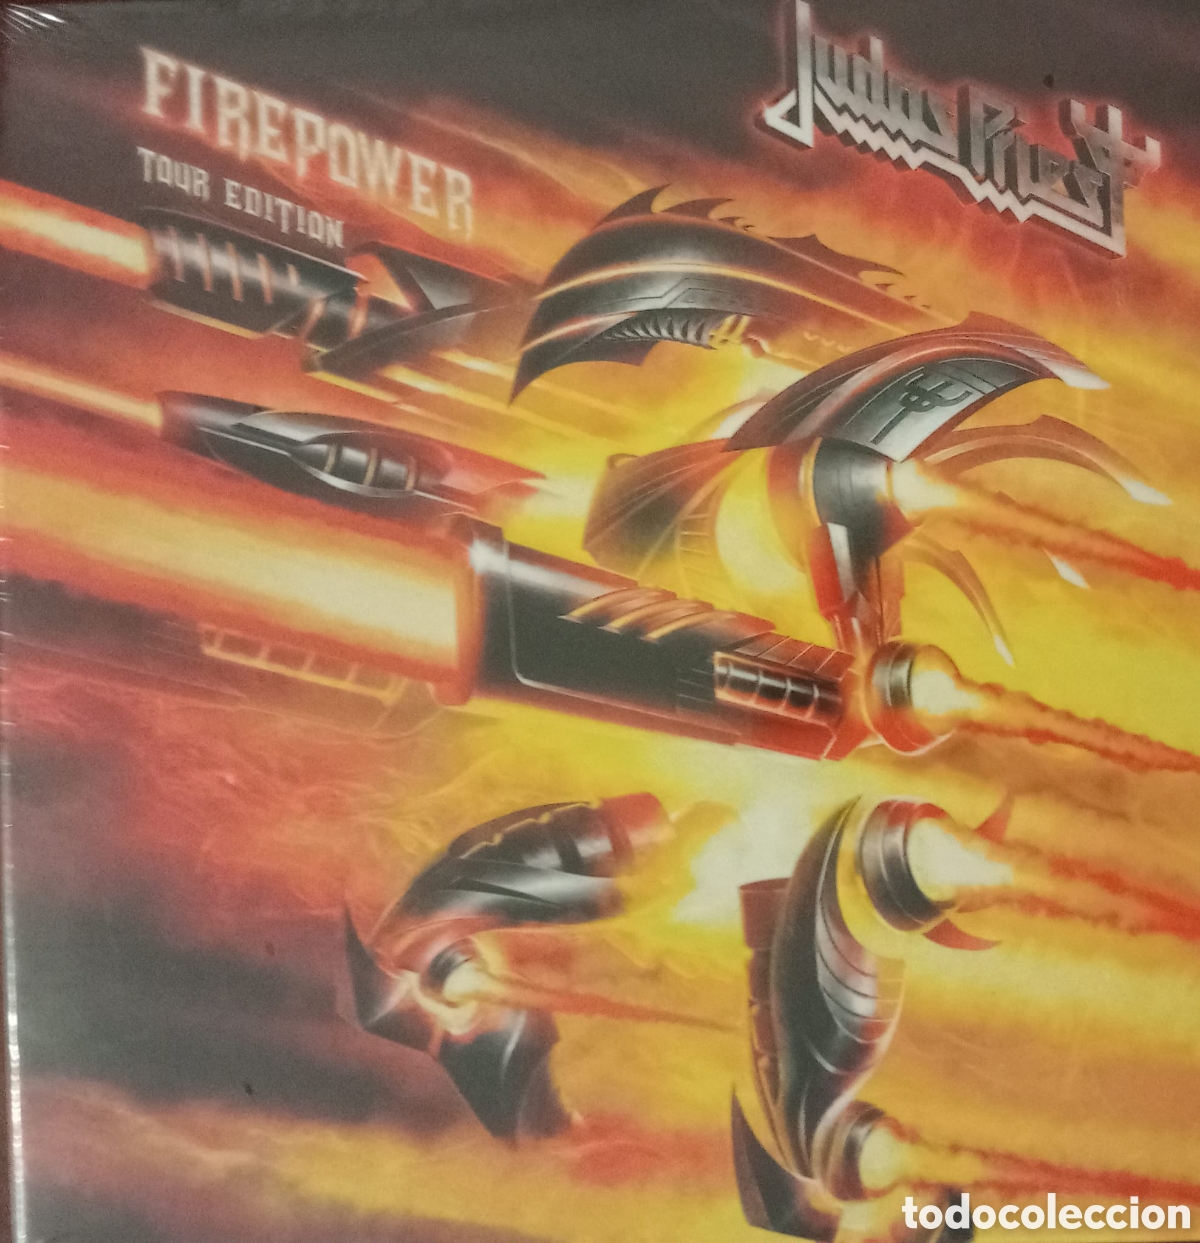 Firepower, Judas Priest CD